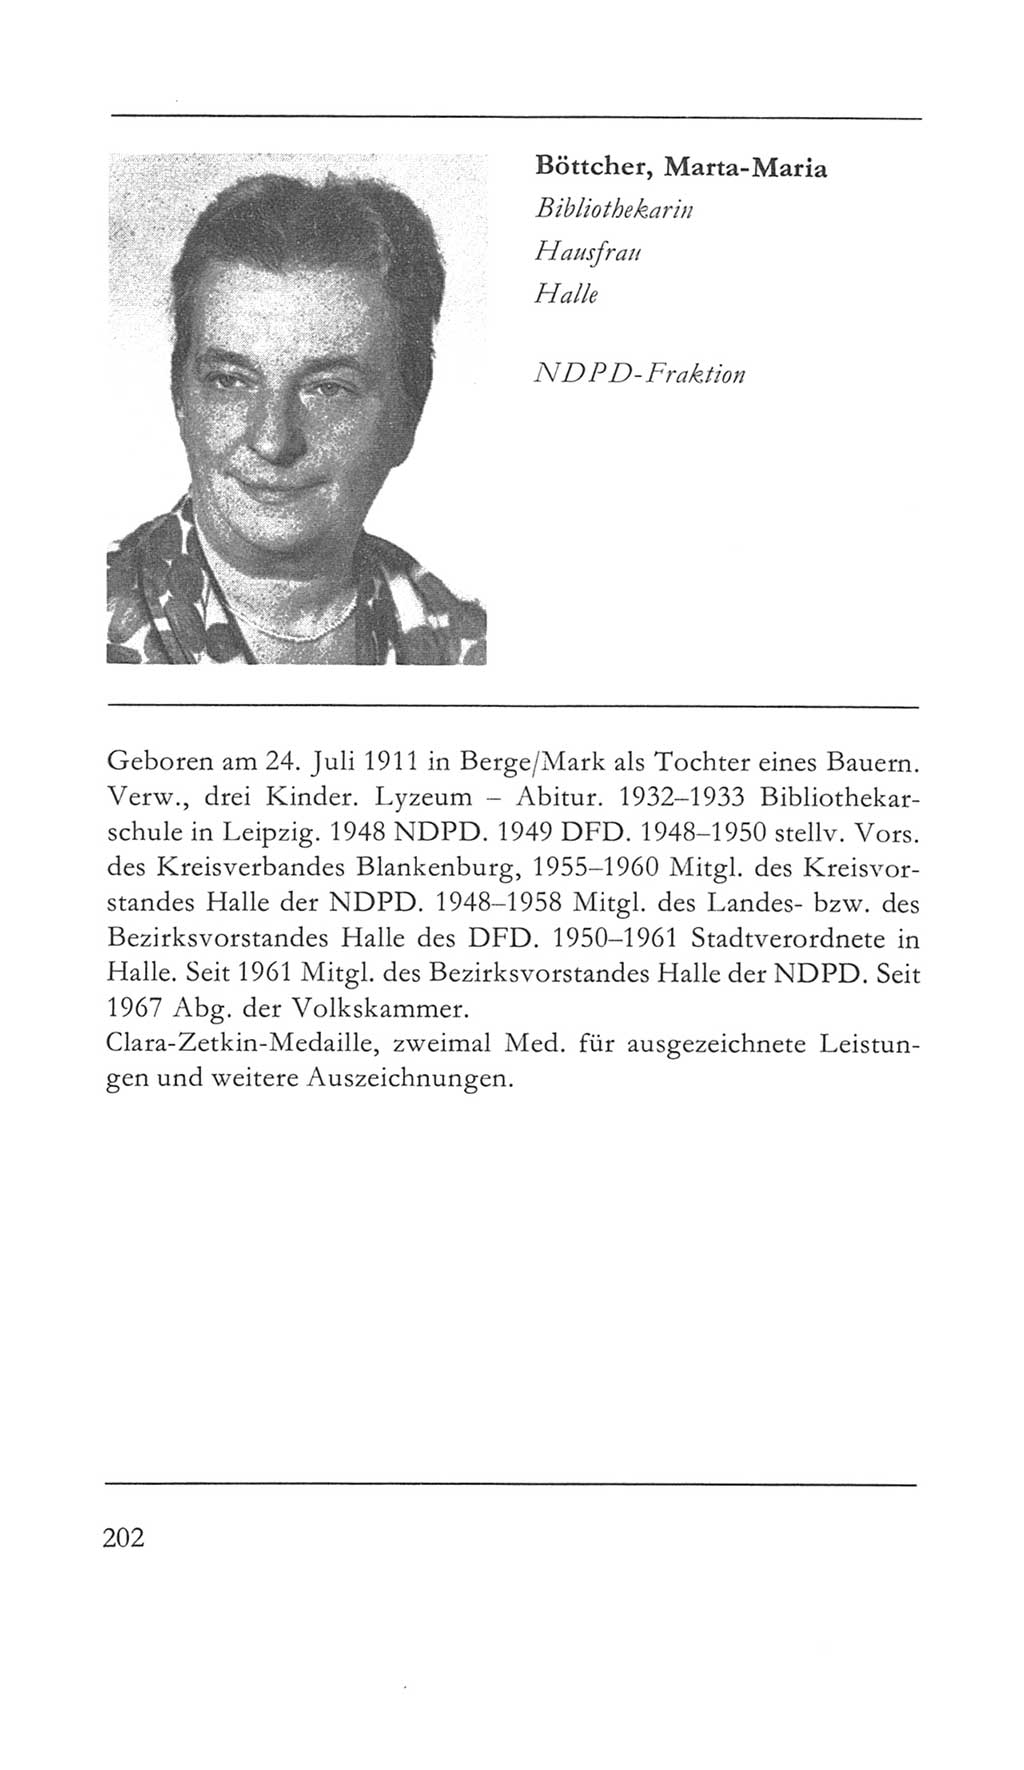 Volkskammer (VK) der Deutschen Demokratischen Republik (DDR) 5. Wahlperiode 1967-1971, Seite 202 (VK. DDR 5. WP. 1967-1971, S. 202)